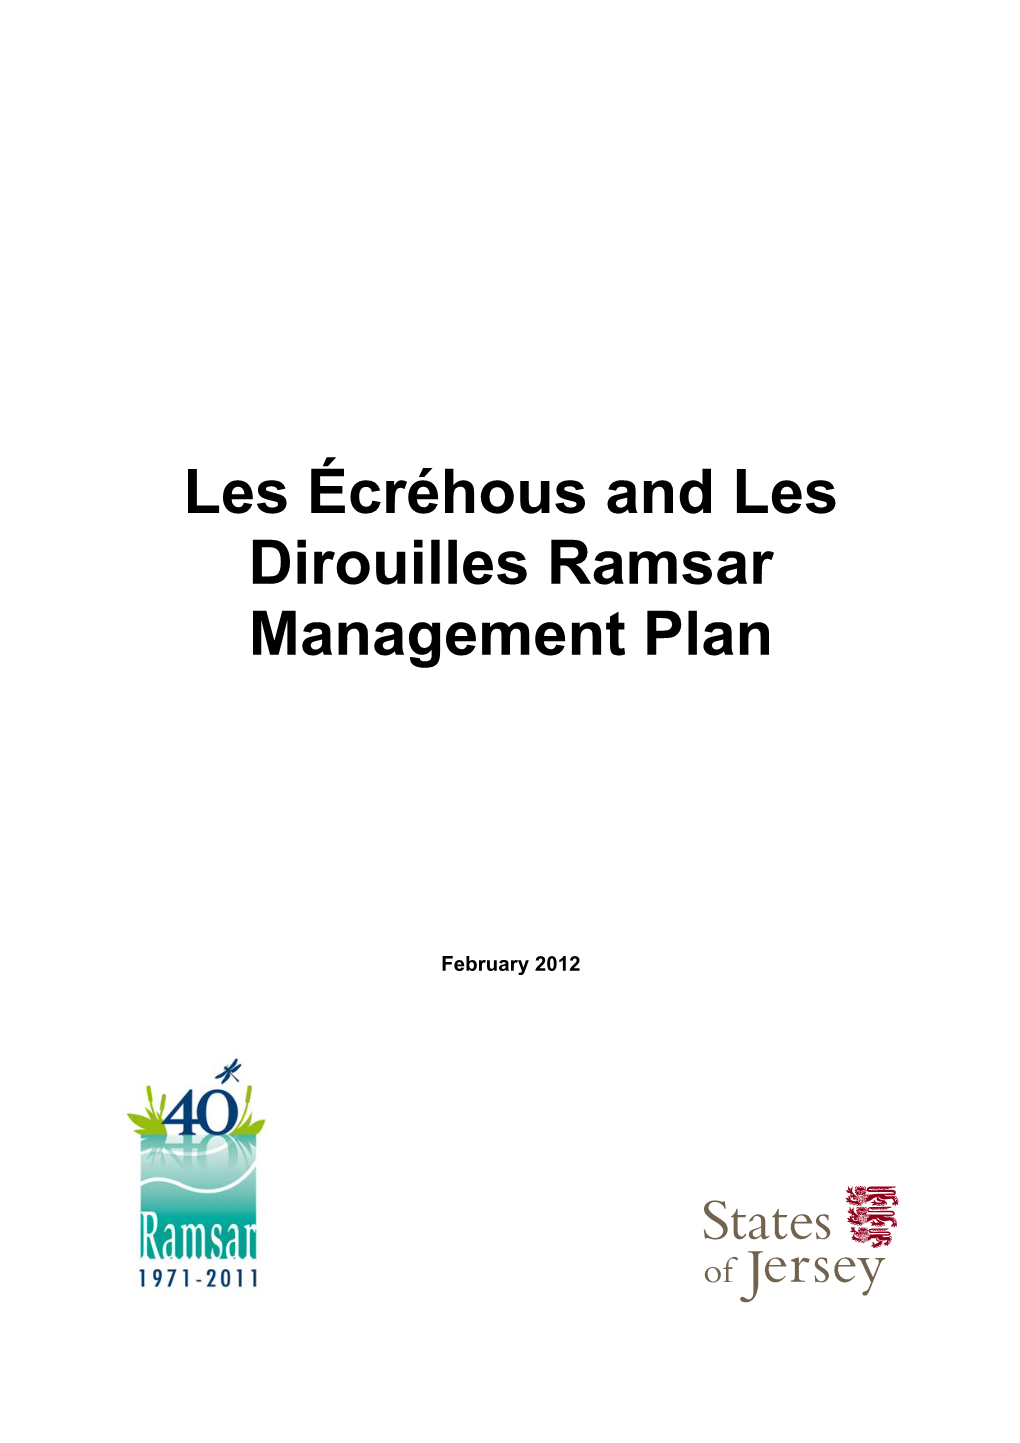 Ramsar Les Ecrehous Management Plan